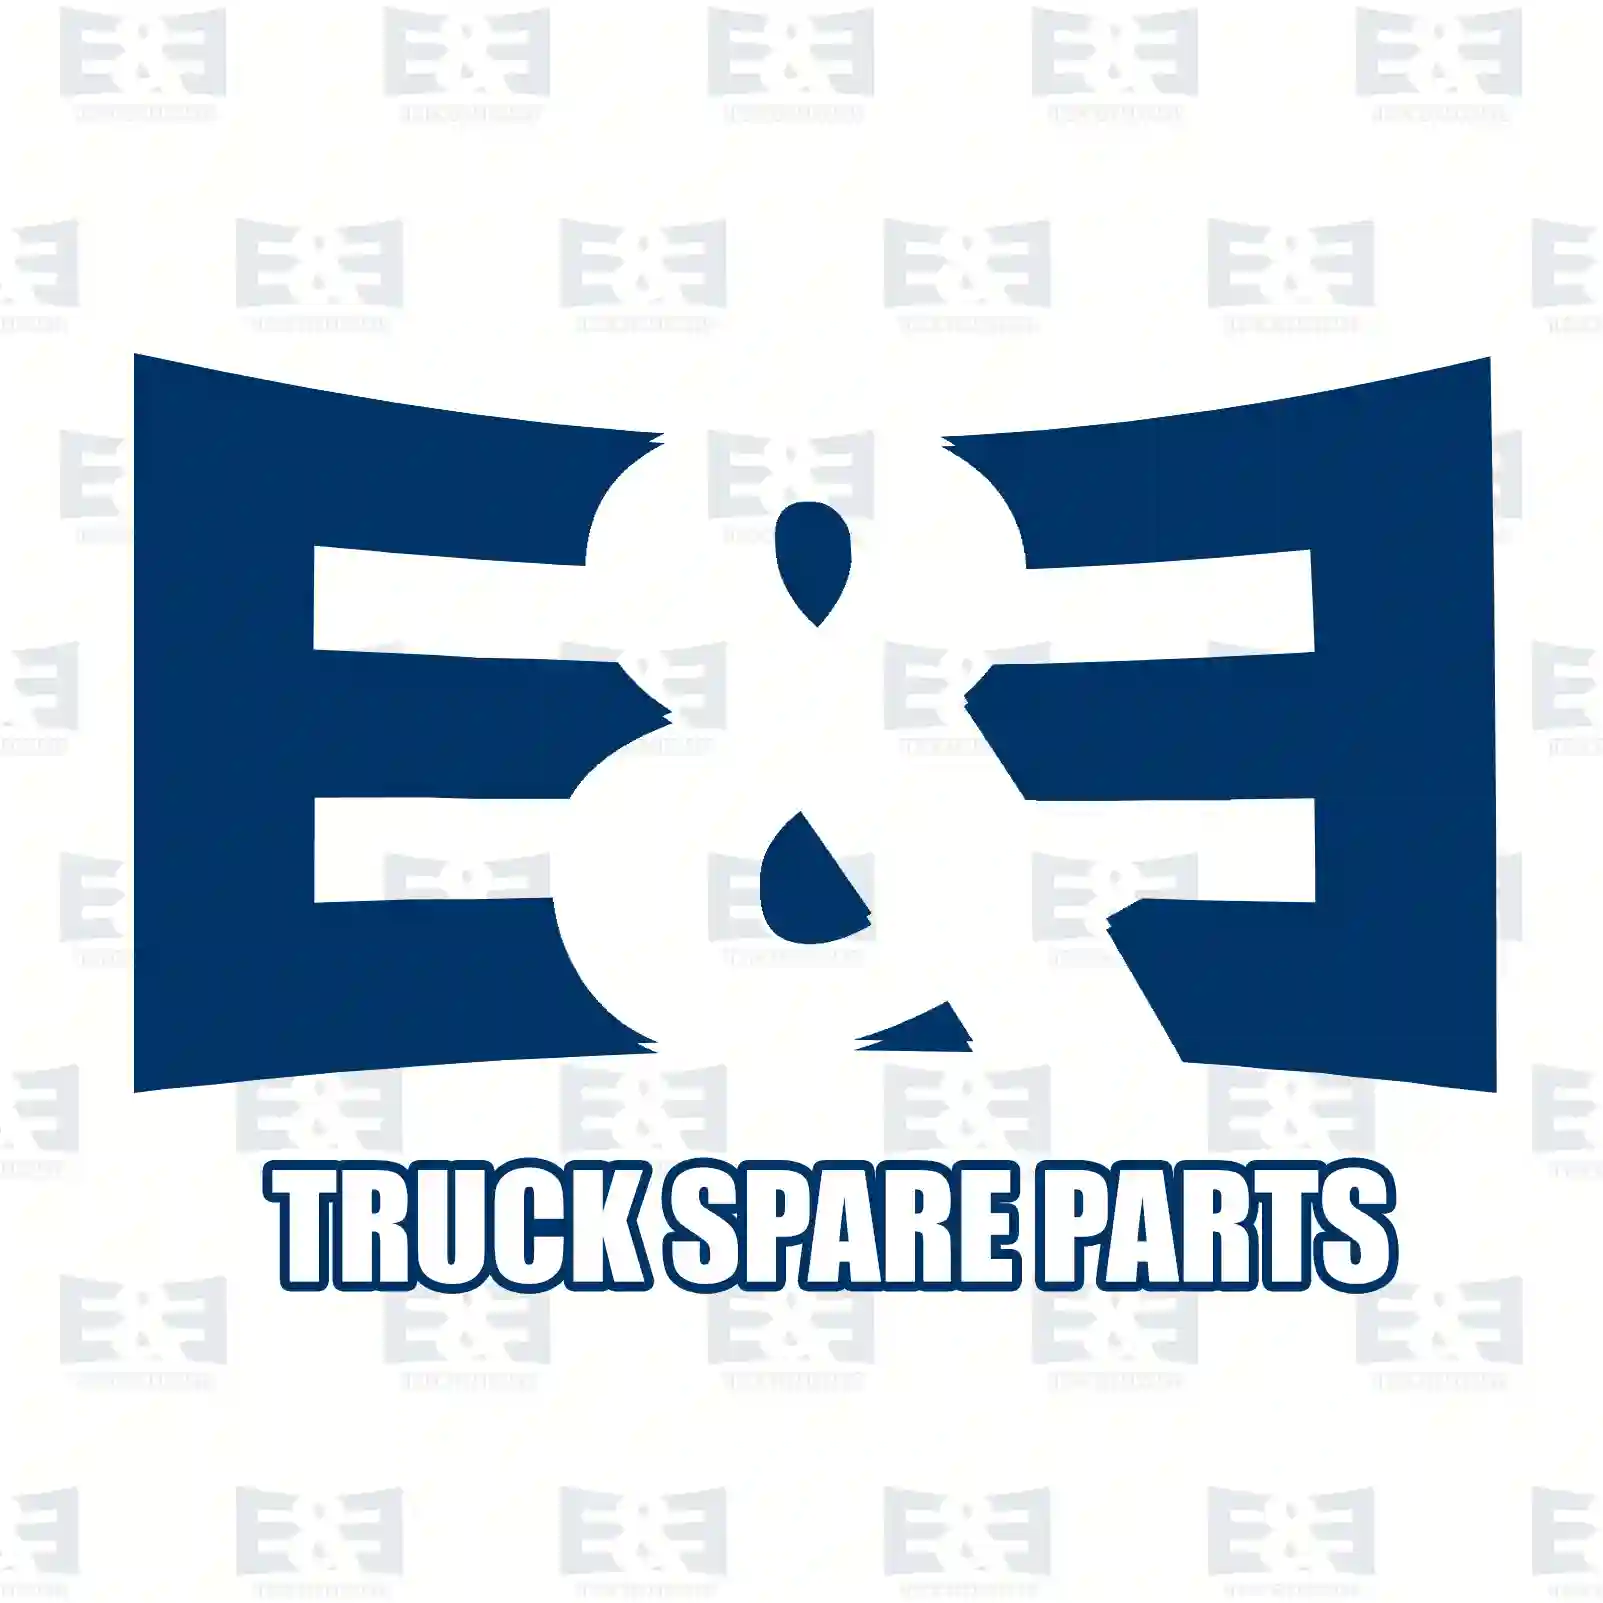 Insect protection, 2E2289457, 1865186, ZG60904-0008 ||  2E2289457 E&E Truck Spare Parts | Truck Spare Parts, Auotomotive Spare Parts Insect protection, 2E2289457, 1865186, ZG60904-0008 ||  2E2289457 E&E Truck Spare Parts | Truck Spare Parts, Auotomotive Spare Parts